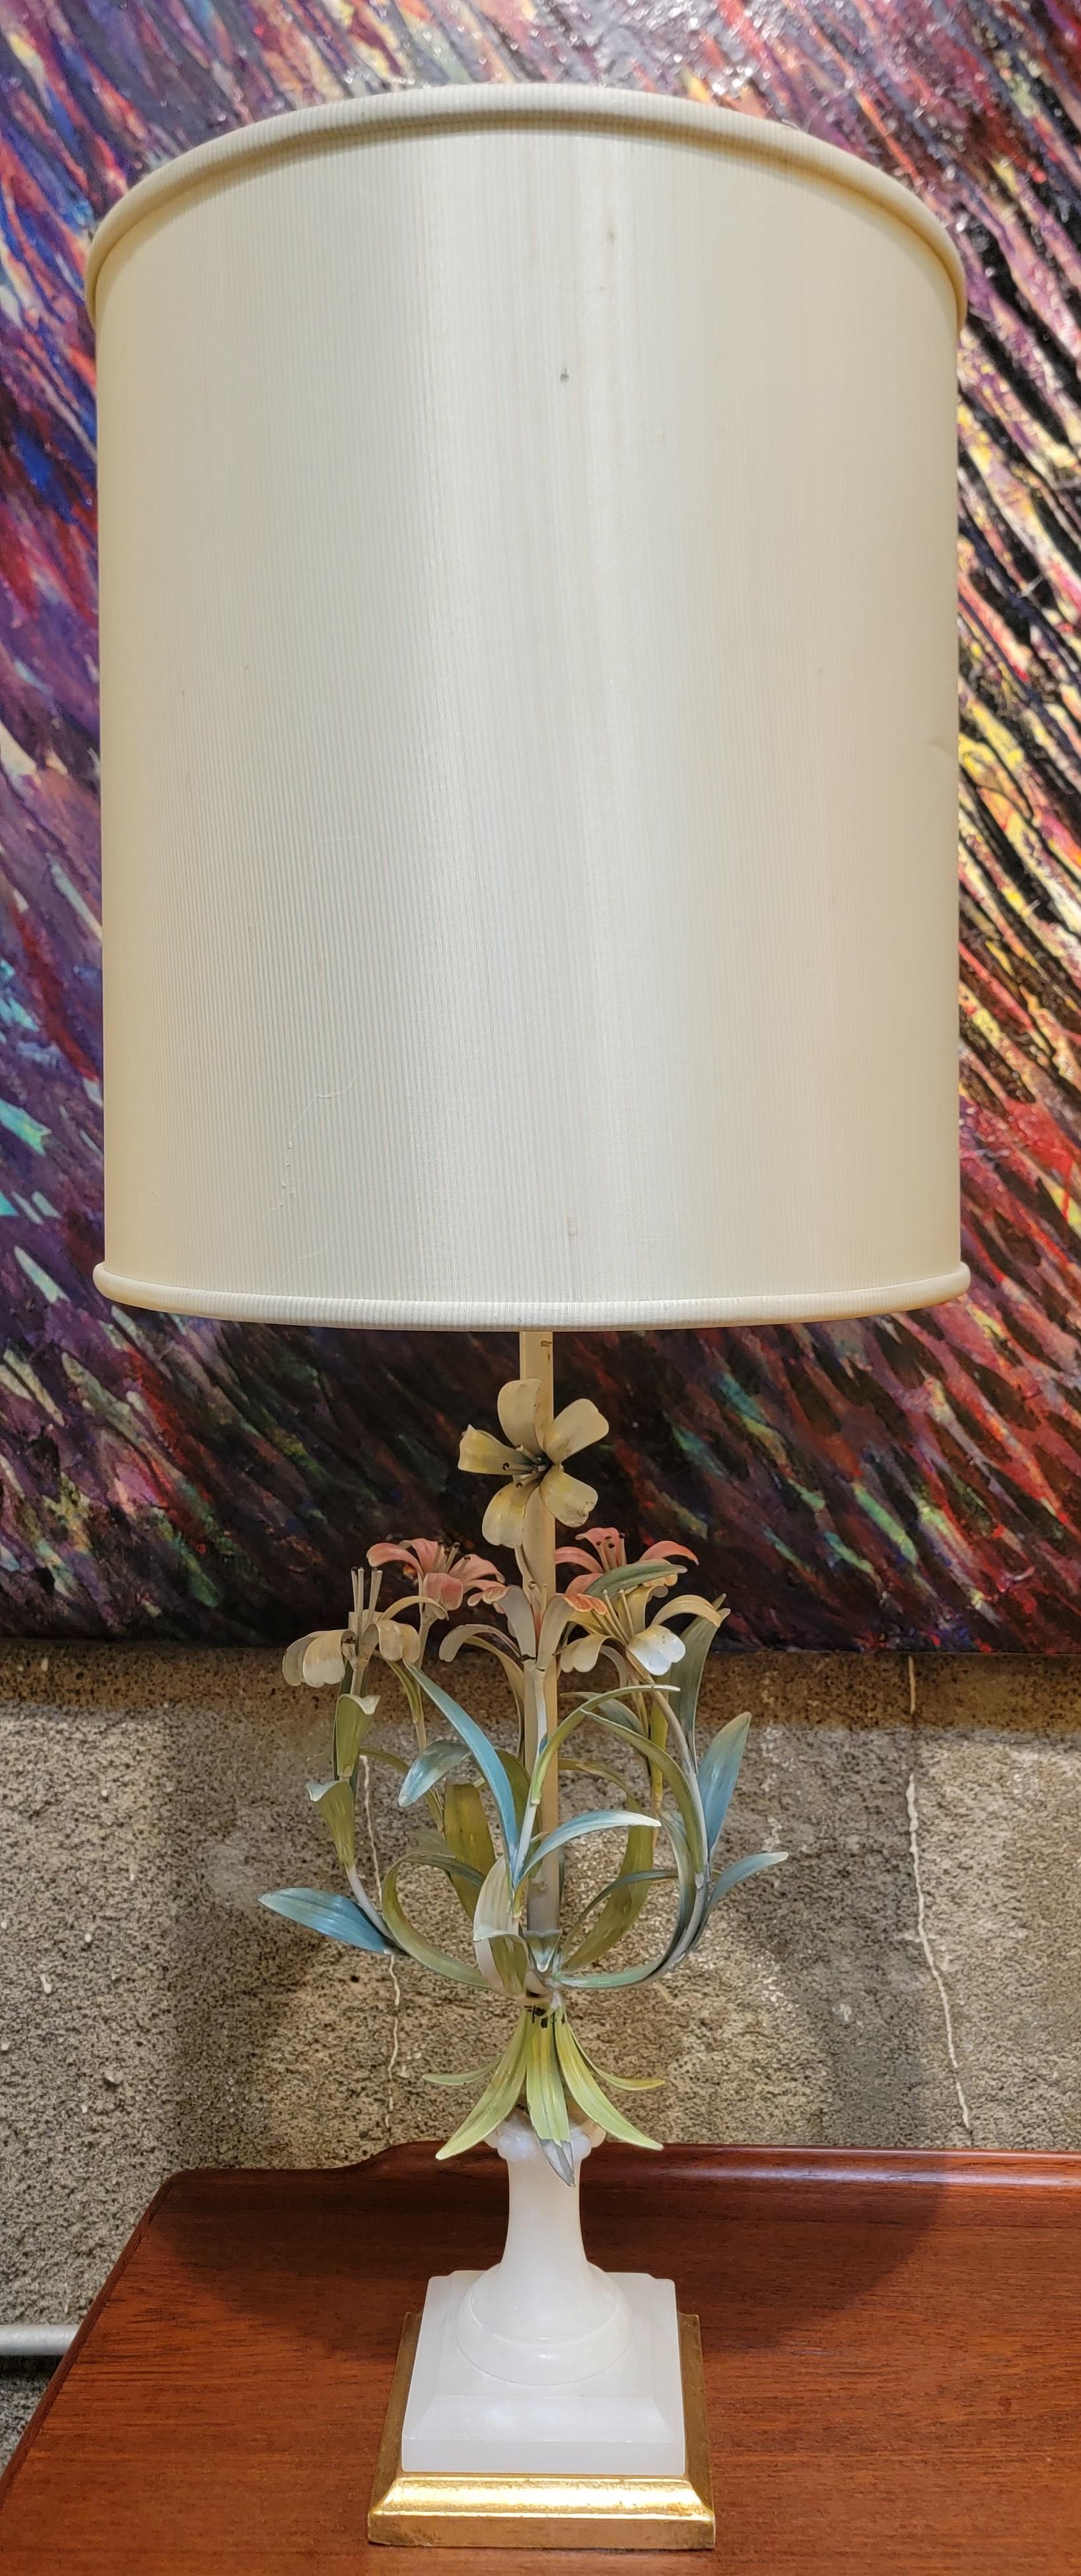 Safran & Gluckman Import lampe de table italienne en albâtre et fleurs peintes au tole. La base mesure 5,38 pouces de côté. La fleur en métal mesure 8,5 pouces de diamètre.